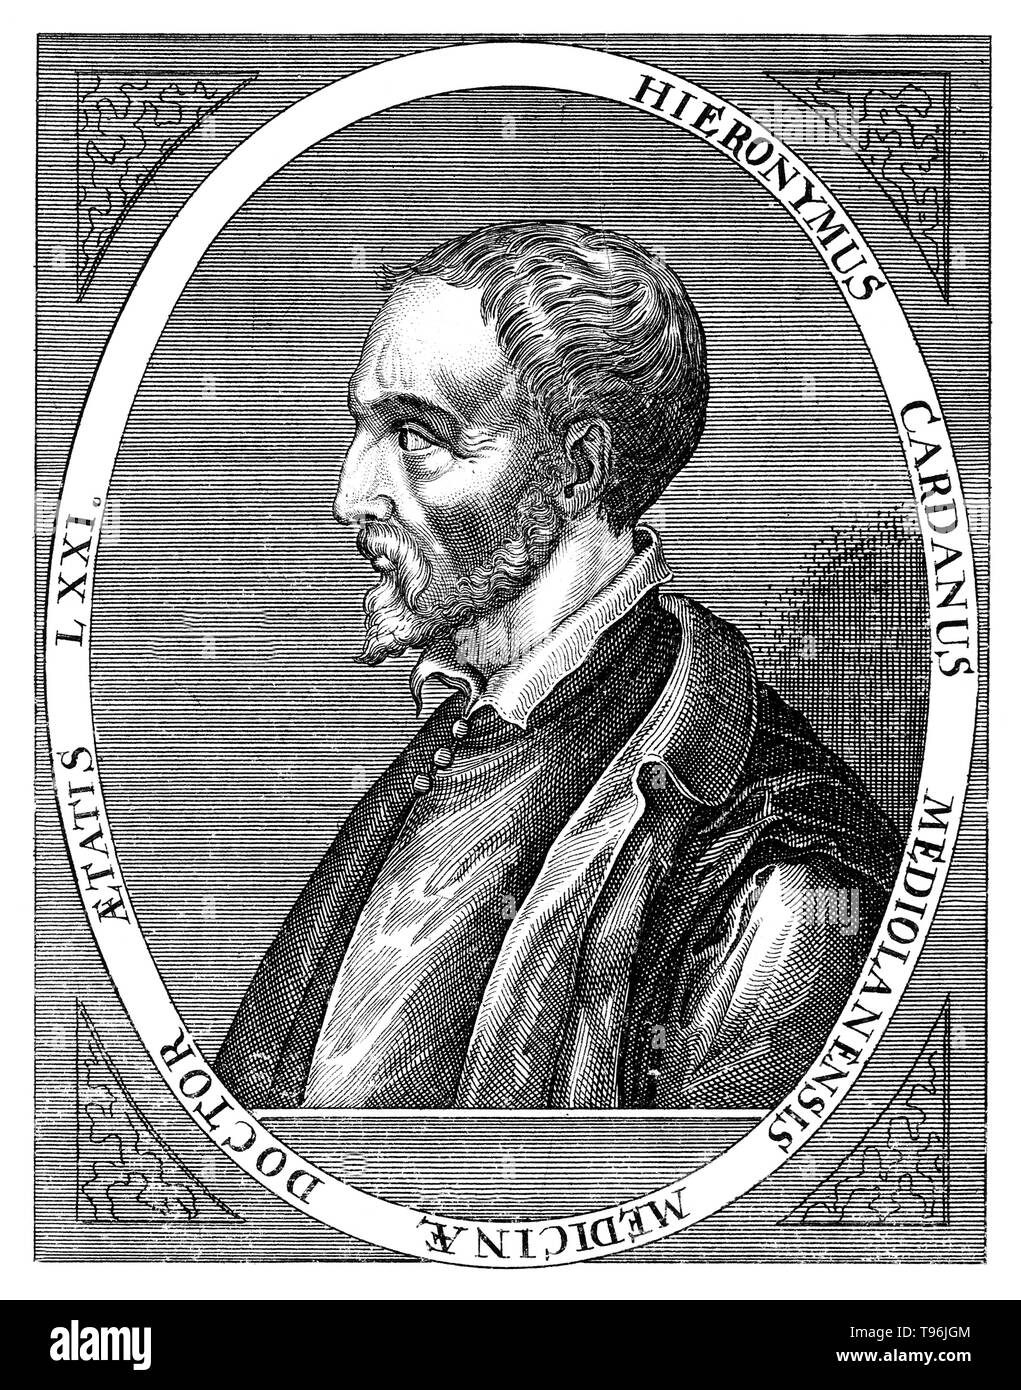 Gerolamo Cardano (24 septembre 1501 - 21 septembre 1576) était un mathématicien italien, dont les intérêts varient d'être un mathématicien, médecin, biologiste, physicien, chimiste, astronome, astrologue, philosophe, écrivain, et joueur. Il a été l'un des mathématiciens les plus influents de la Renaissance, et a été l'un des personnages clés de la fondation de la probabilité, des coefficients binomiaux et le binôme de Newton. Il a écrit plus de 200 ouvrages sur la science. Banque D'Images